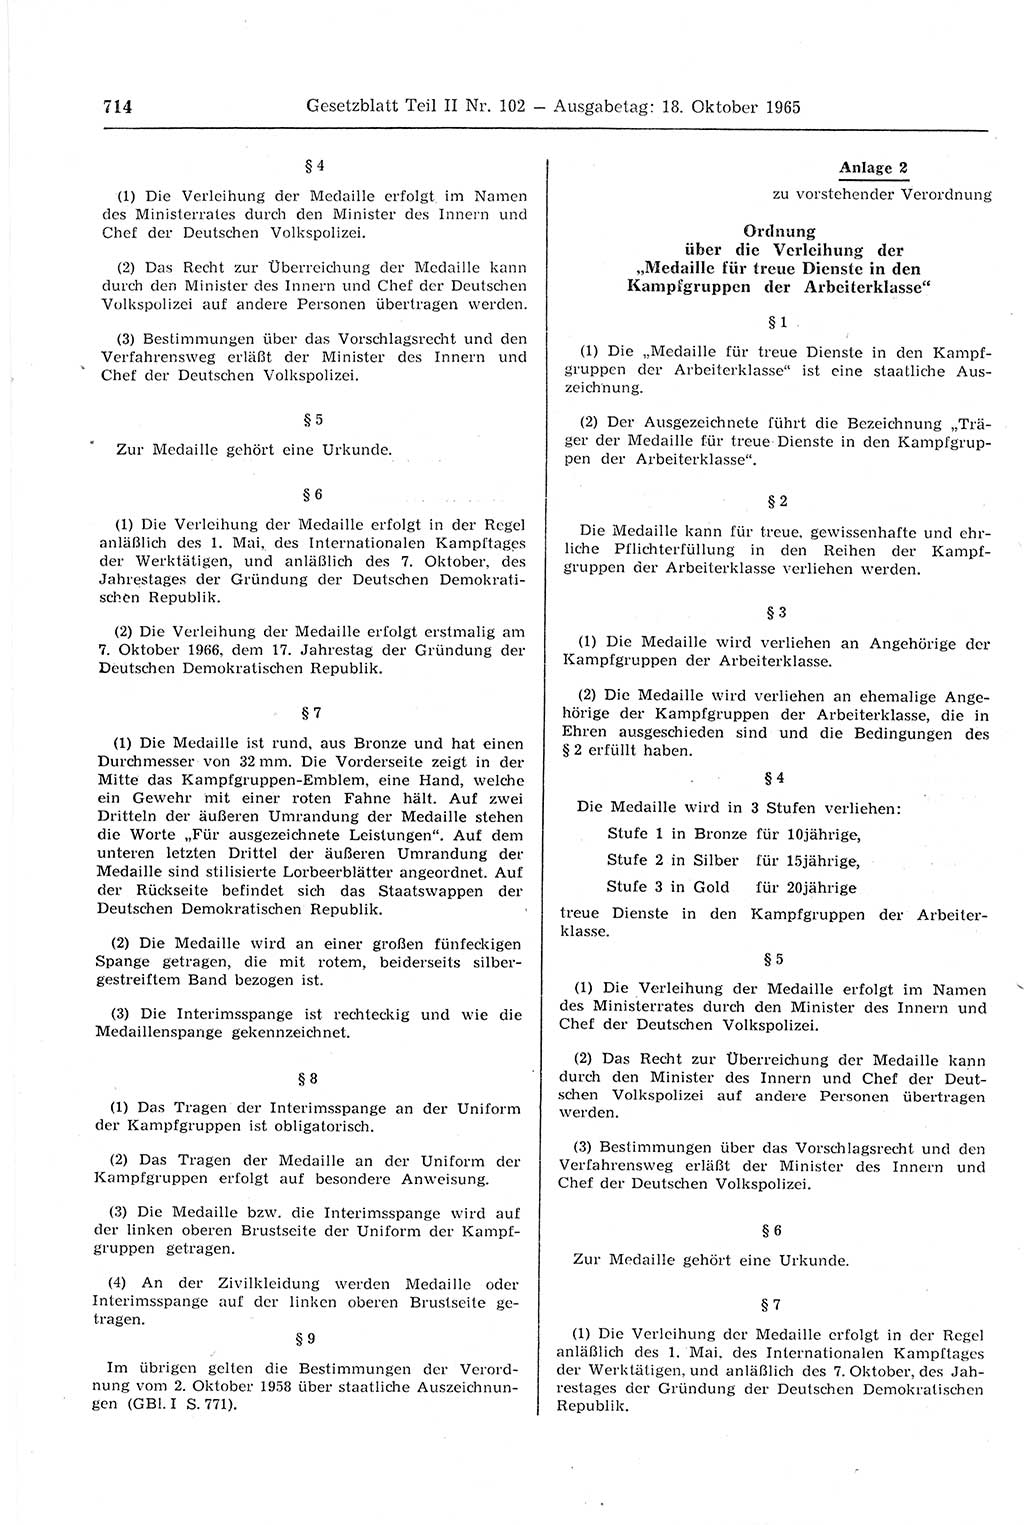 Gesetzblatt (GBl.) der Deutschen Demokratischen Republik (DDR) Teil ⅠⅠ 1965, Seite 714 (GBl. DDR ⅠⅠ 1965, S. 714)